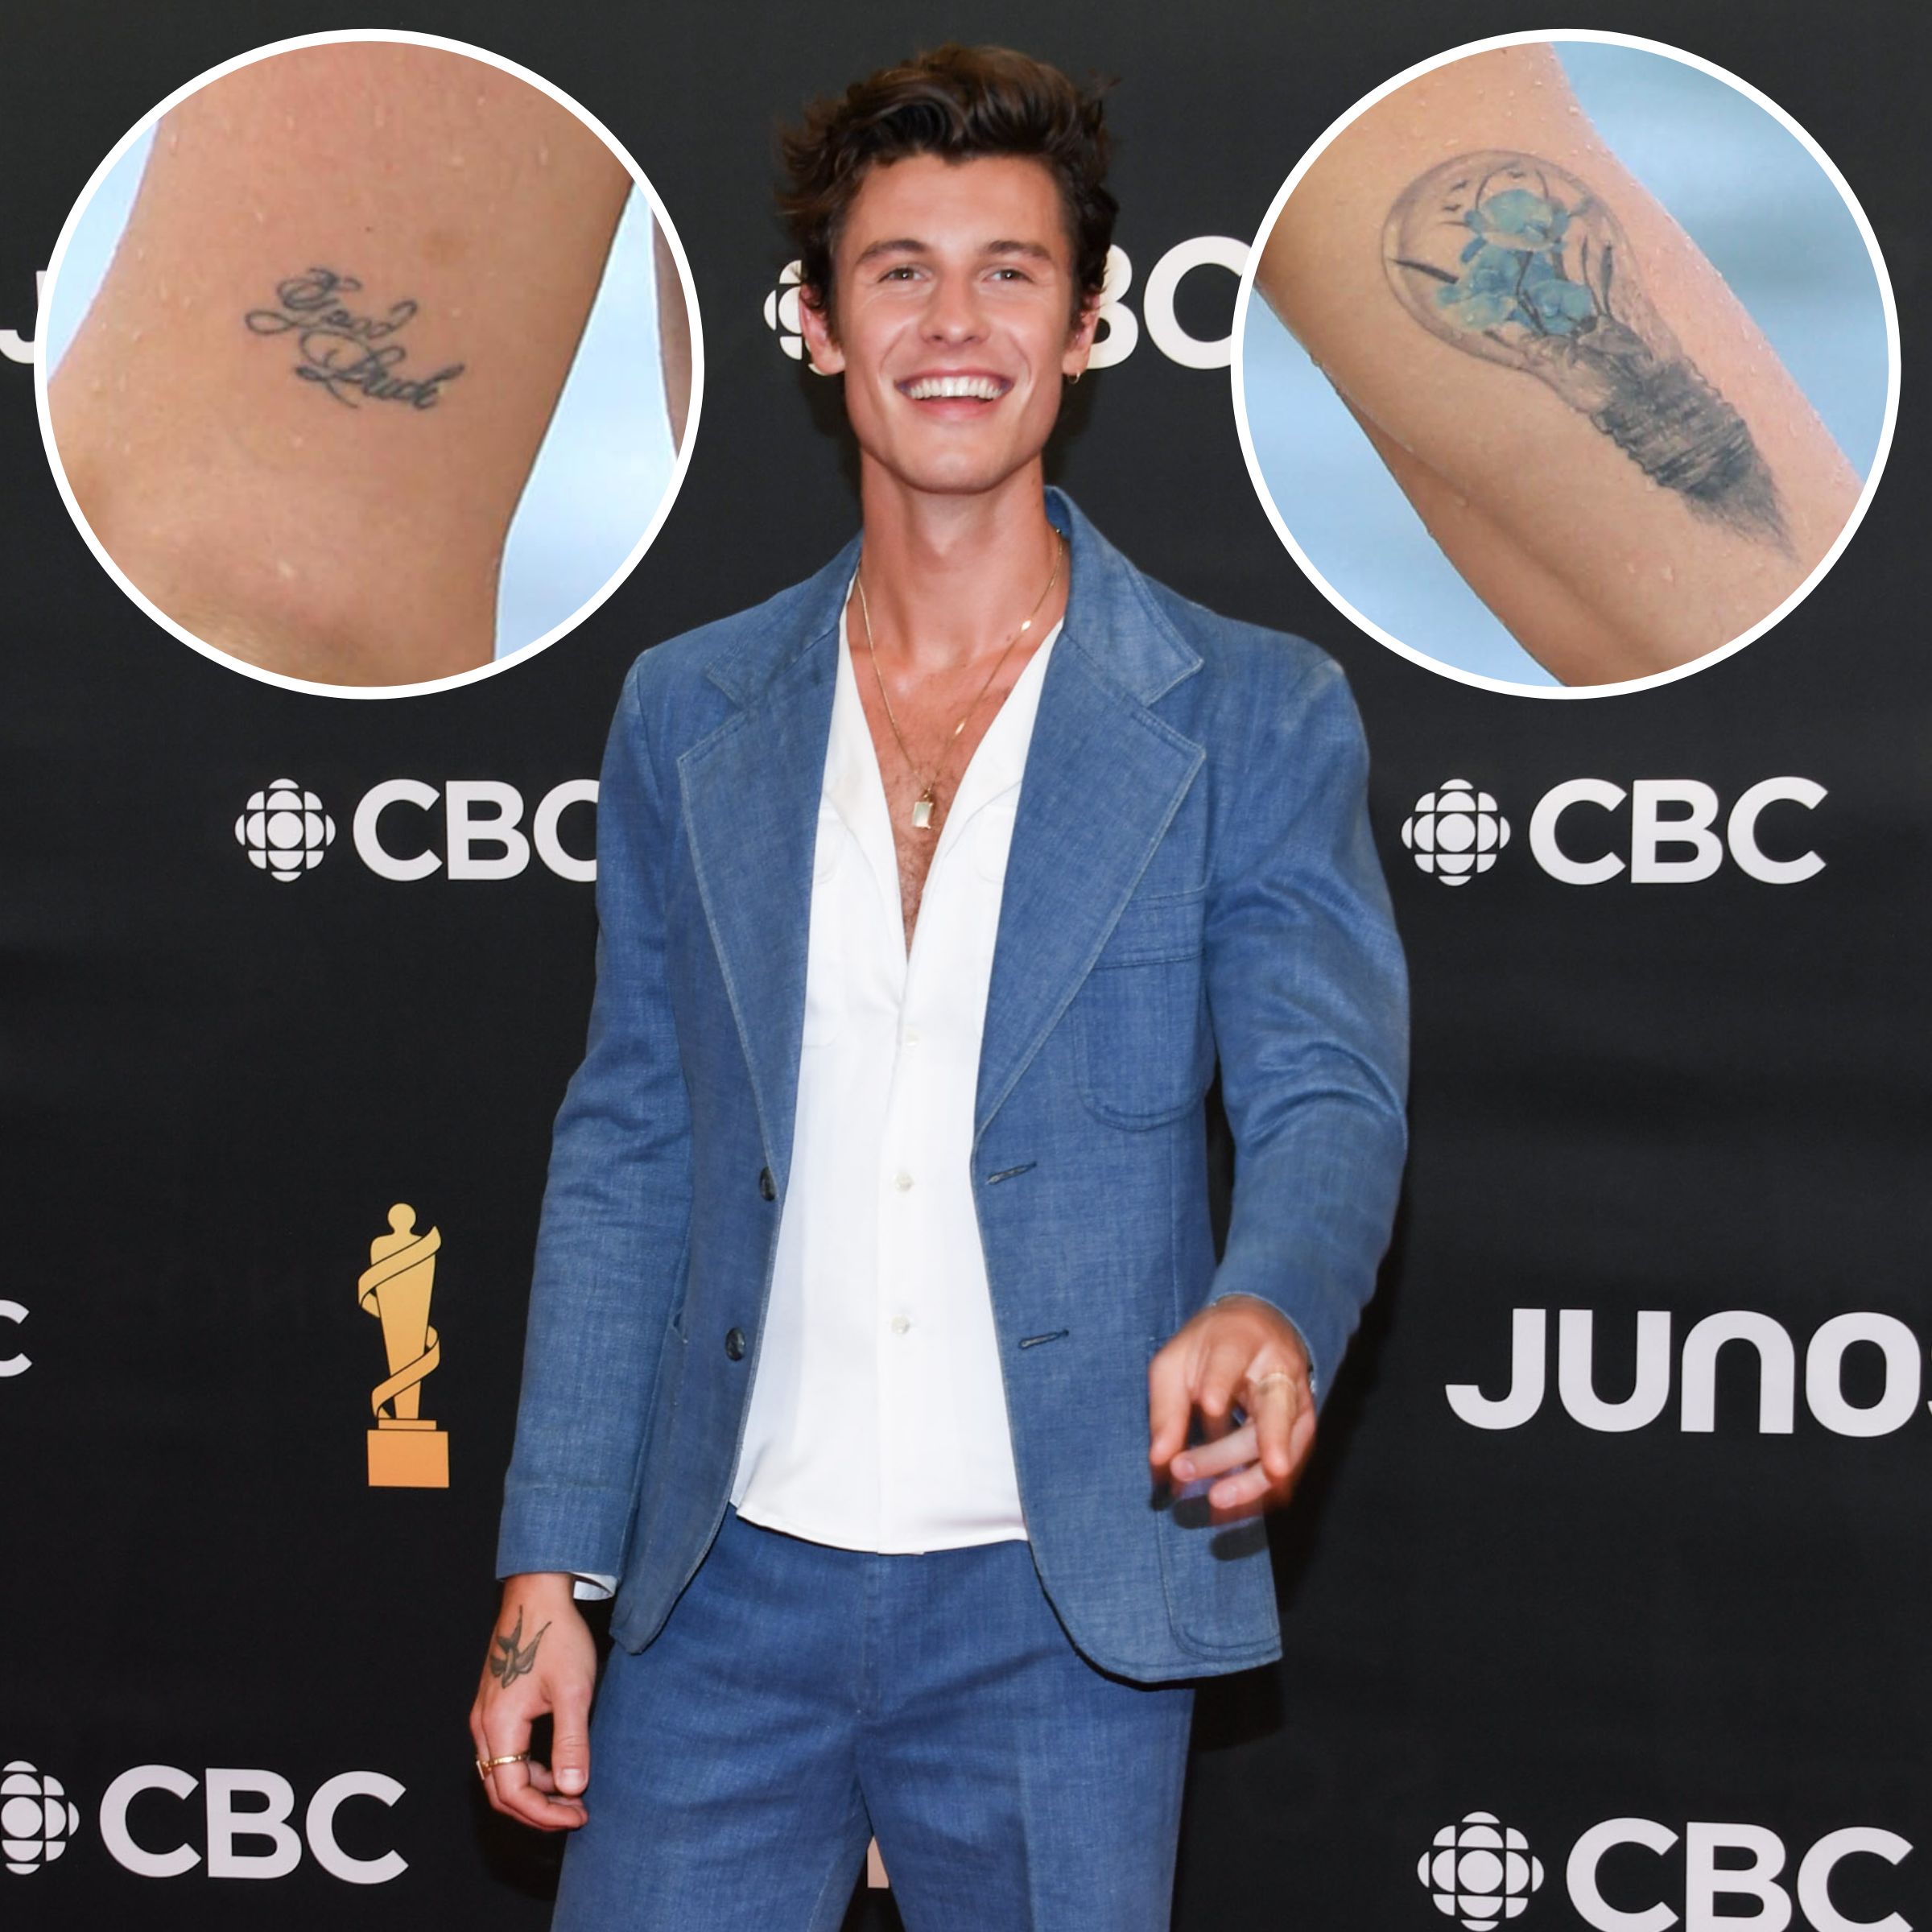 shawnmendes | Shawn mendes tattoos, Shawn mendes new tattoo, Shawn mendes  cute